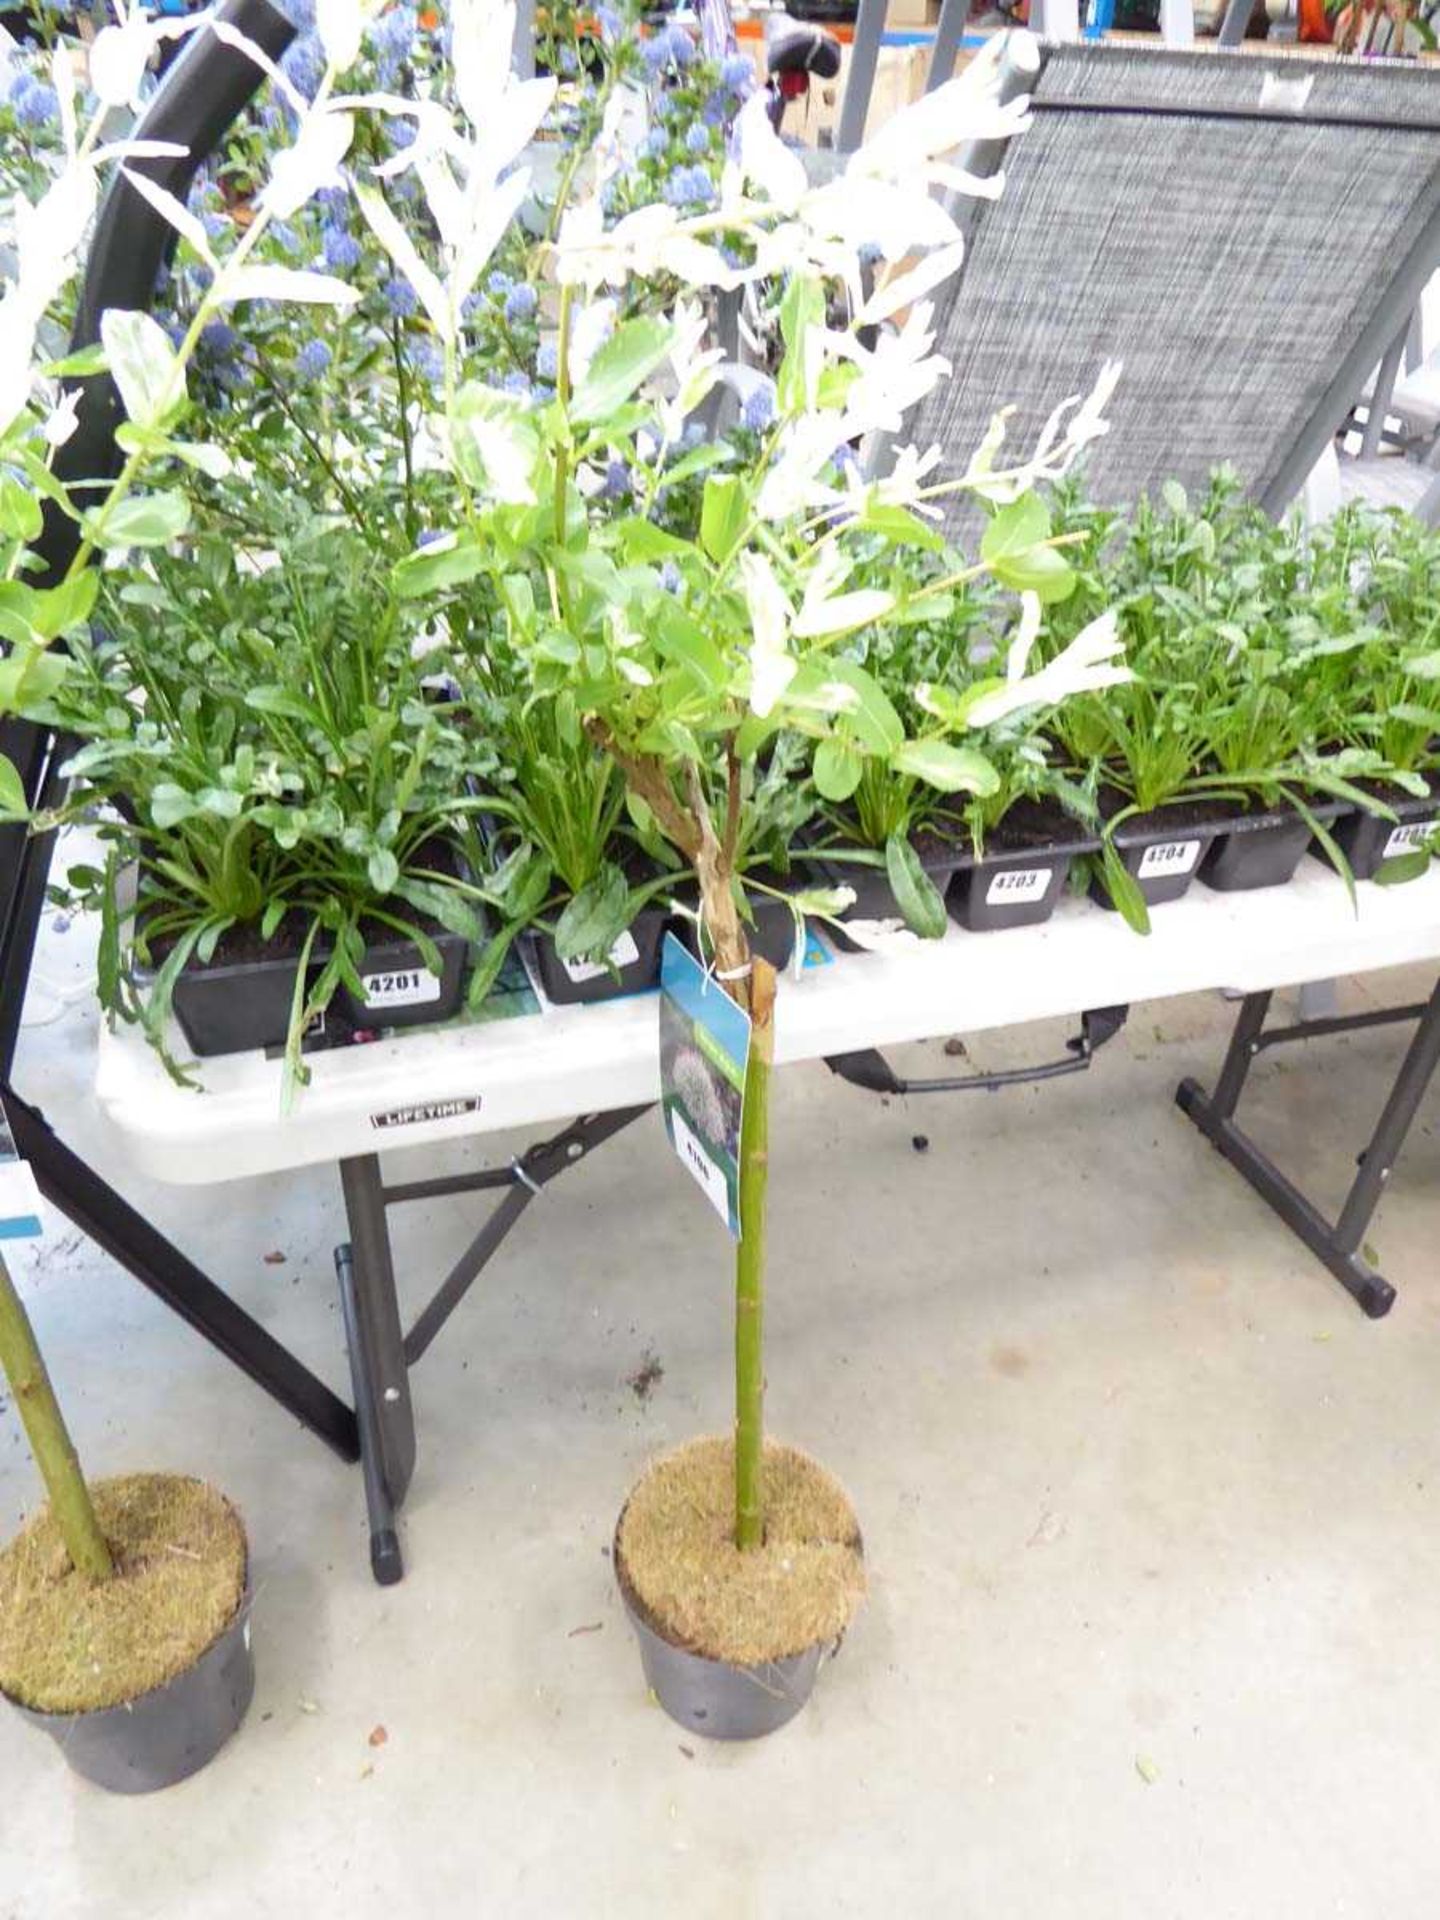 +VAT Small standard Salix plant